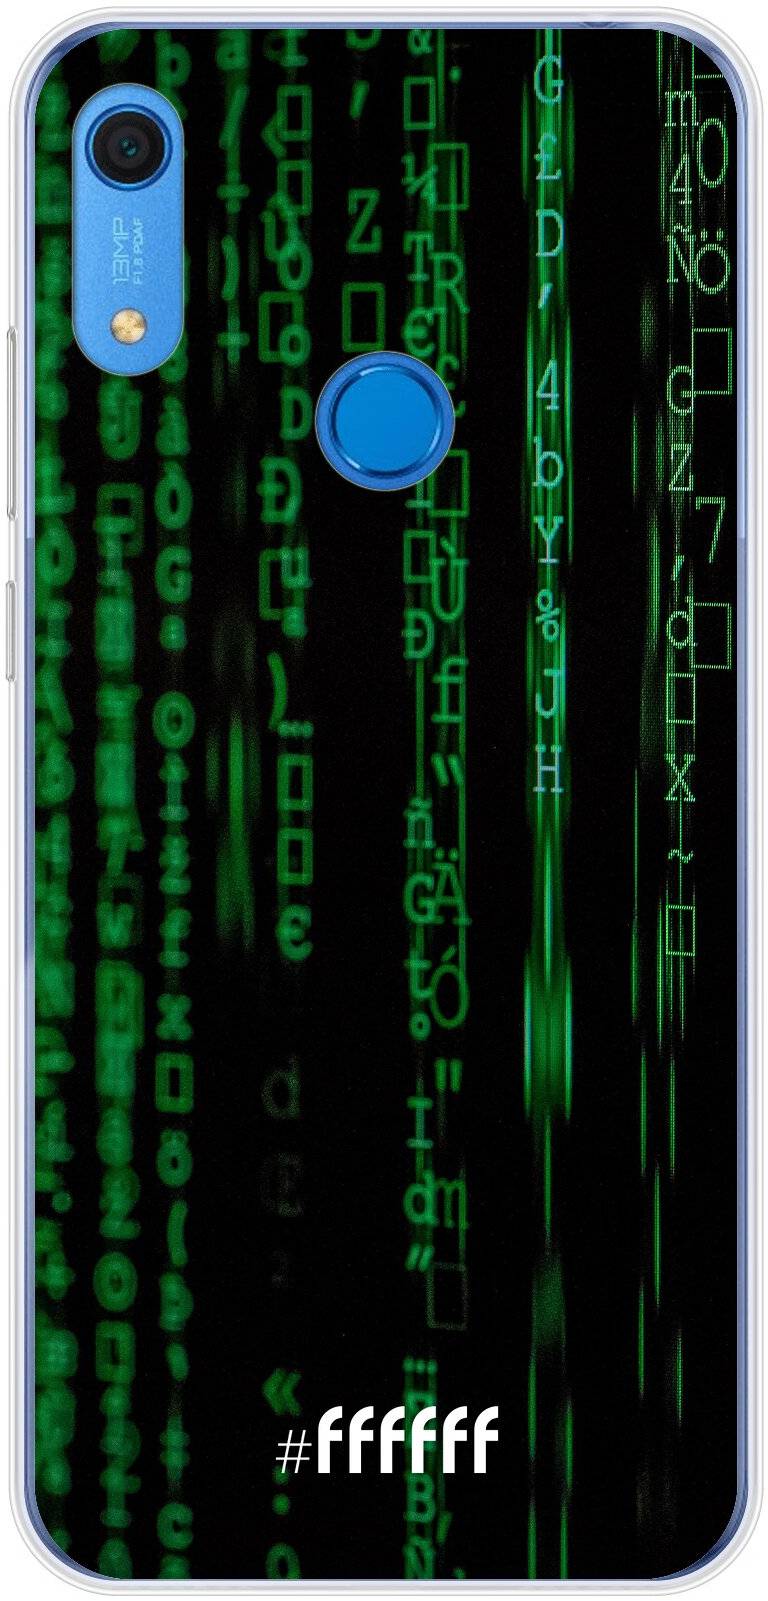 Hacking The Matrix Y6 (2019)